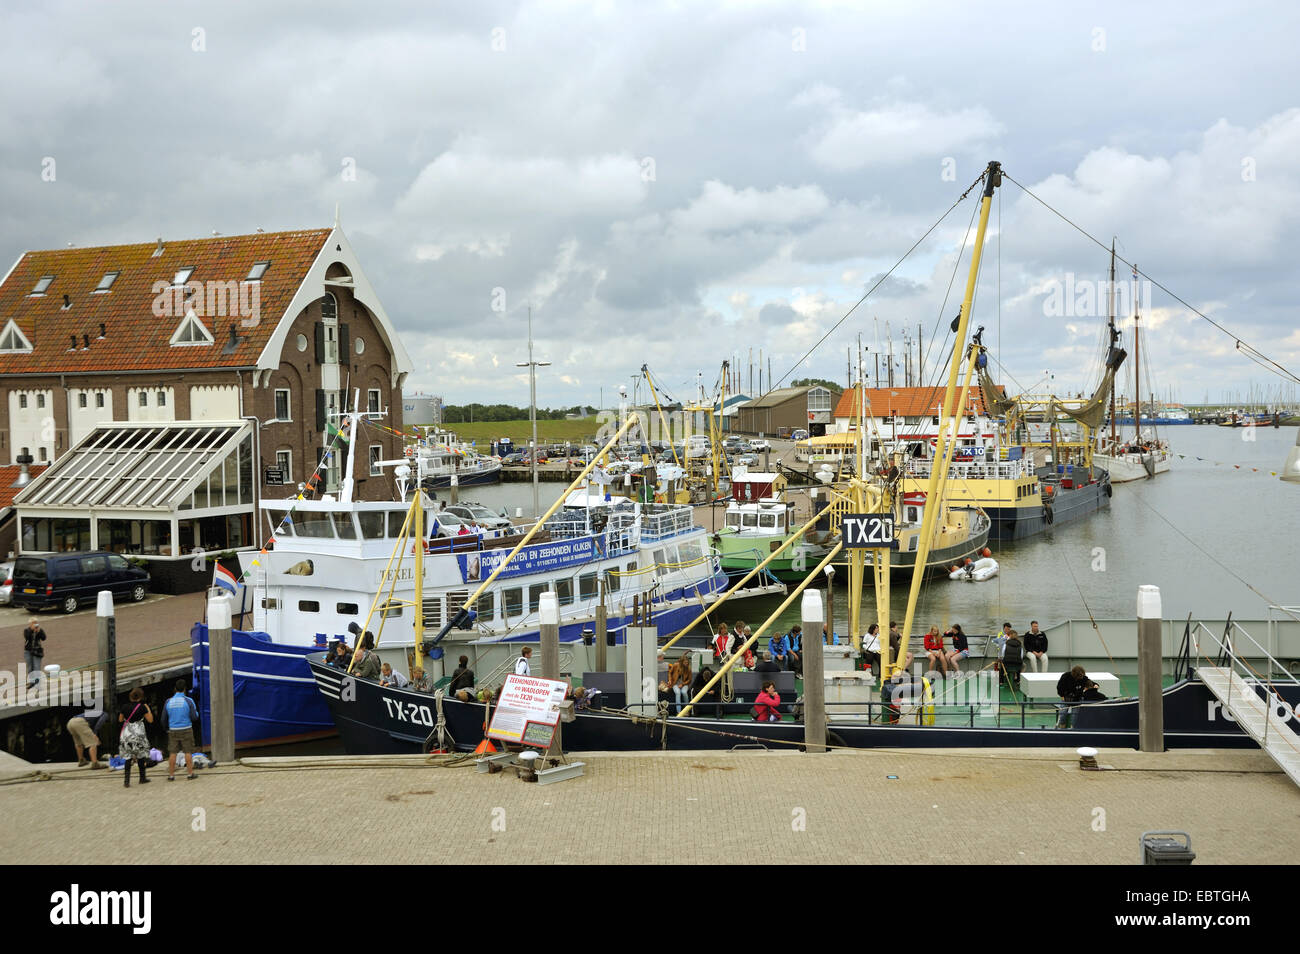 Les bateaux de pêche et des bateaux d'excursion dans le port, Pays-Bas, Texel Oudeschild, Banque D'Images